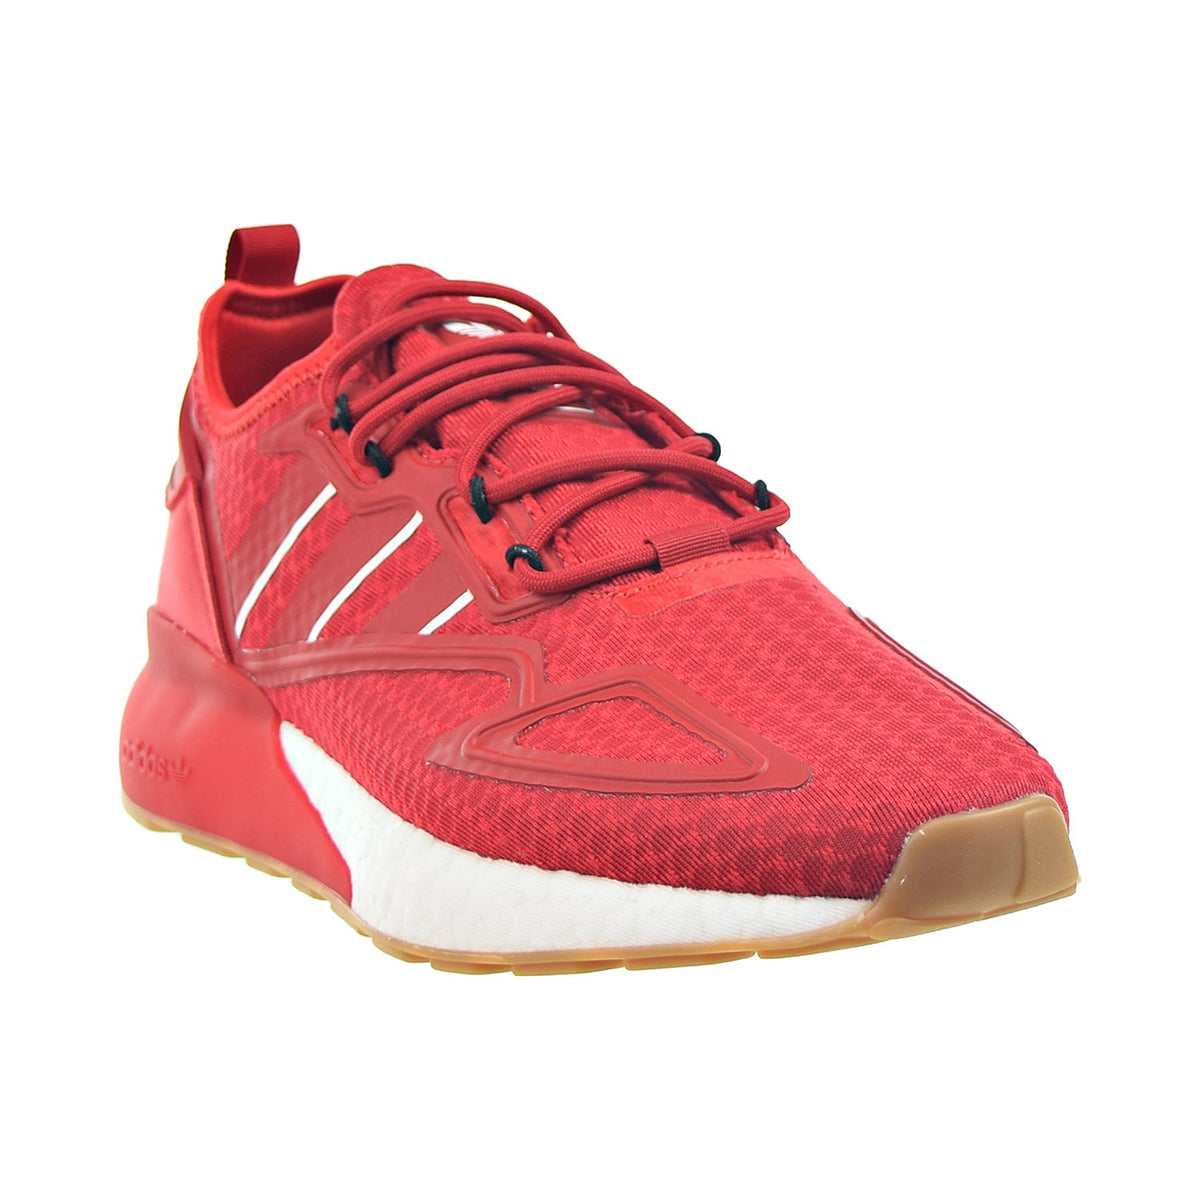 Adidas ZX 2K Boost Men's Shoes Scarlet-Cloud White-Gum